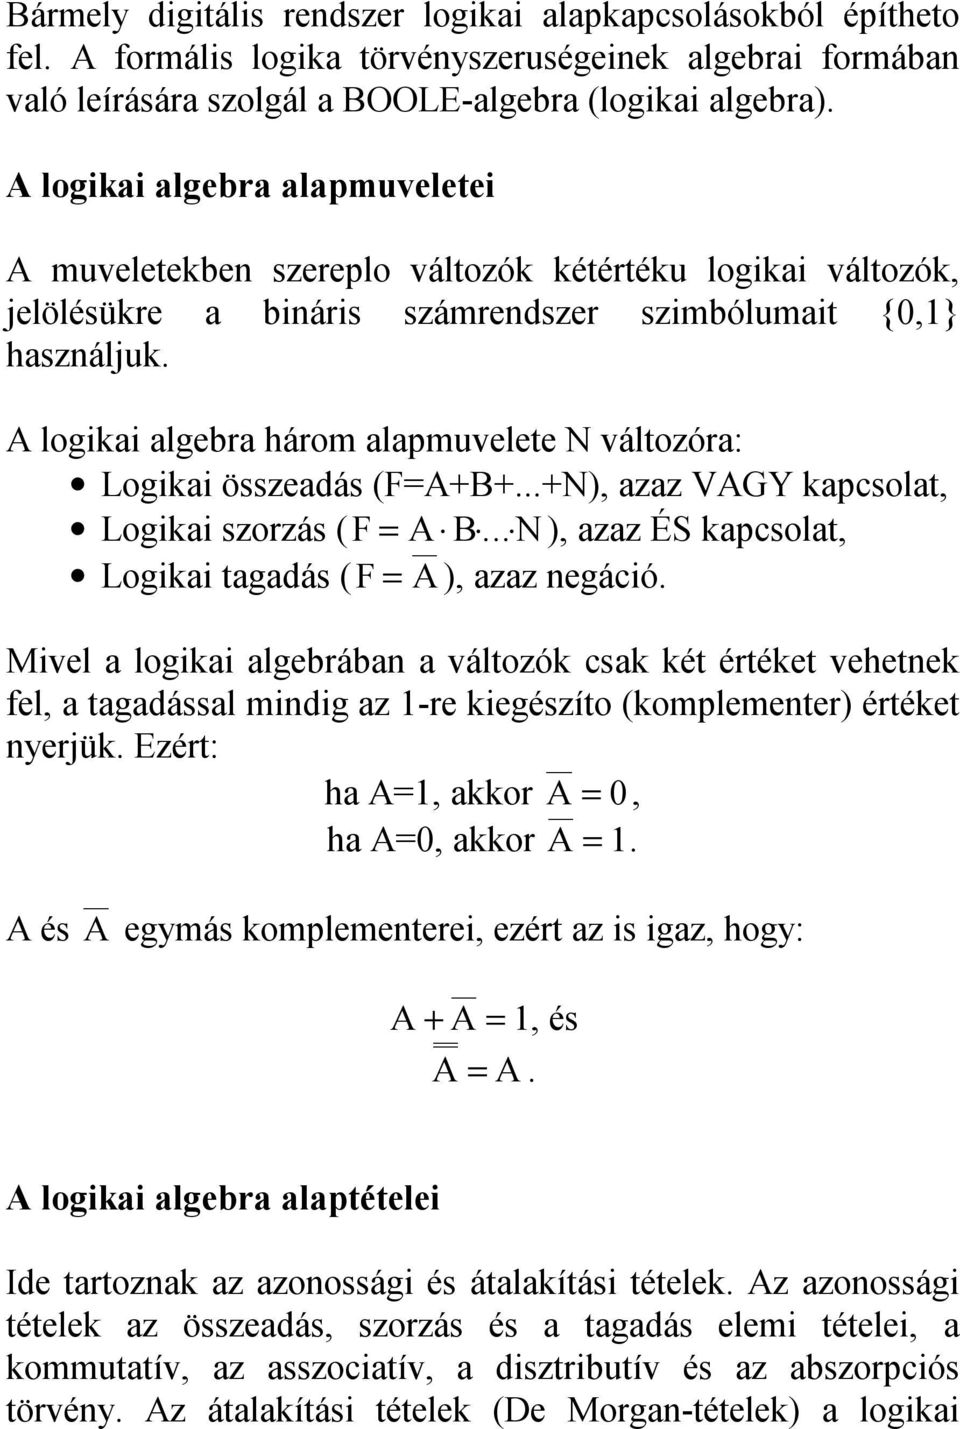 logikai algebra három alapmuvelee N válozóra: Logikai összeadás (F=++...+N), azaz VGY kapcsola, Logikai szorzás (F =... N ), azaz ÉS kapcsola, Logikai agadás (F = ), azaz negáció.